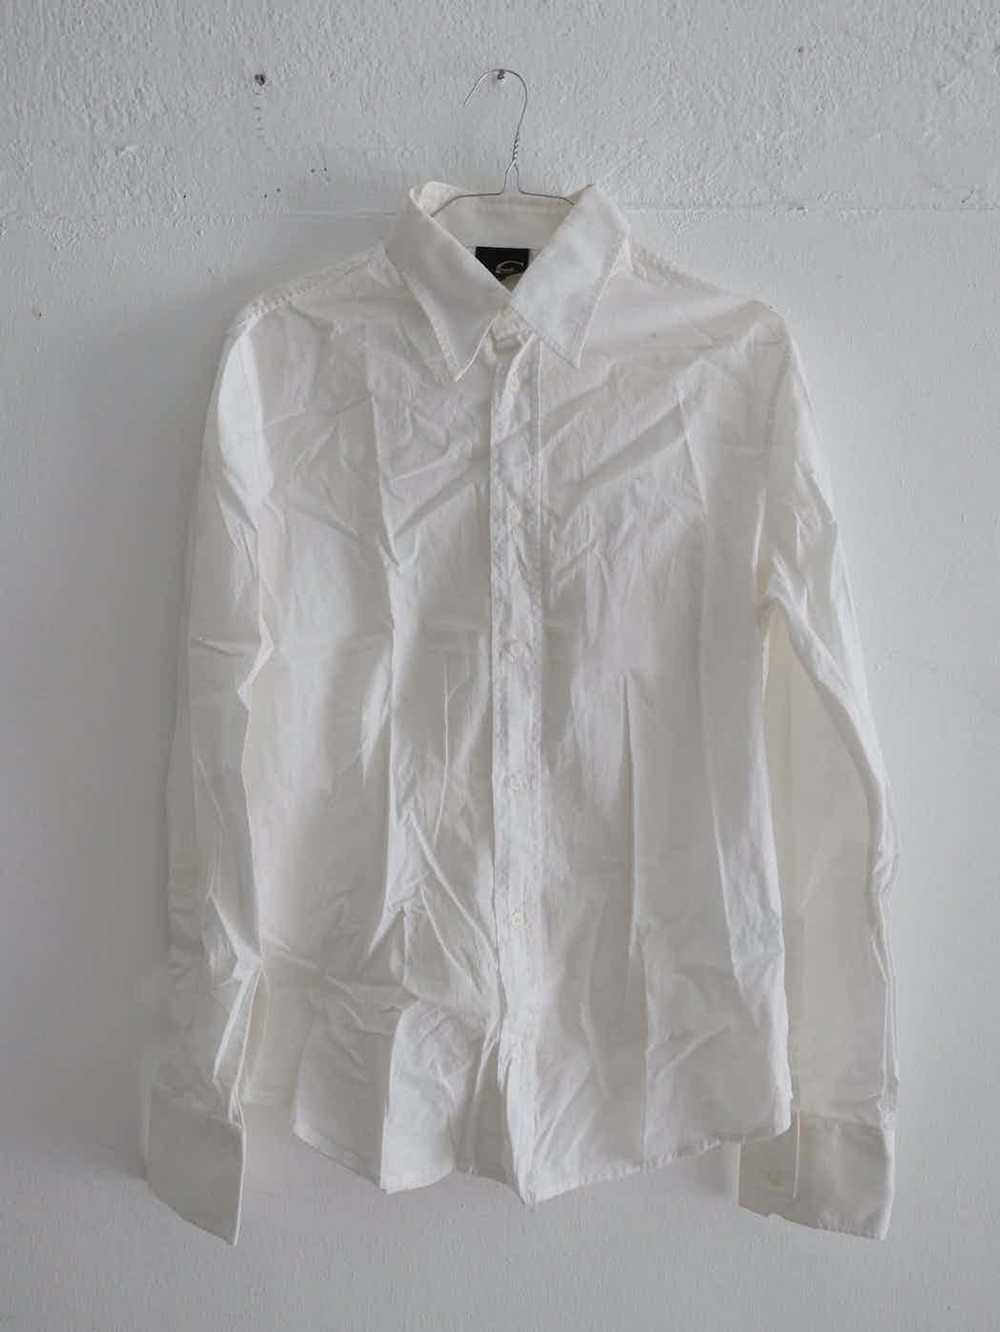 Roberto Cavalli Just Cavalli White Dress Shirt M - image 1